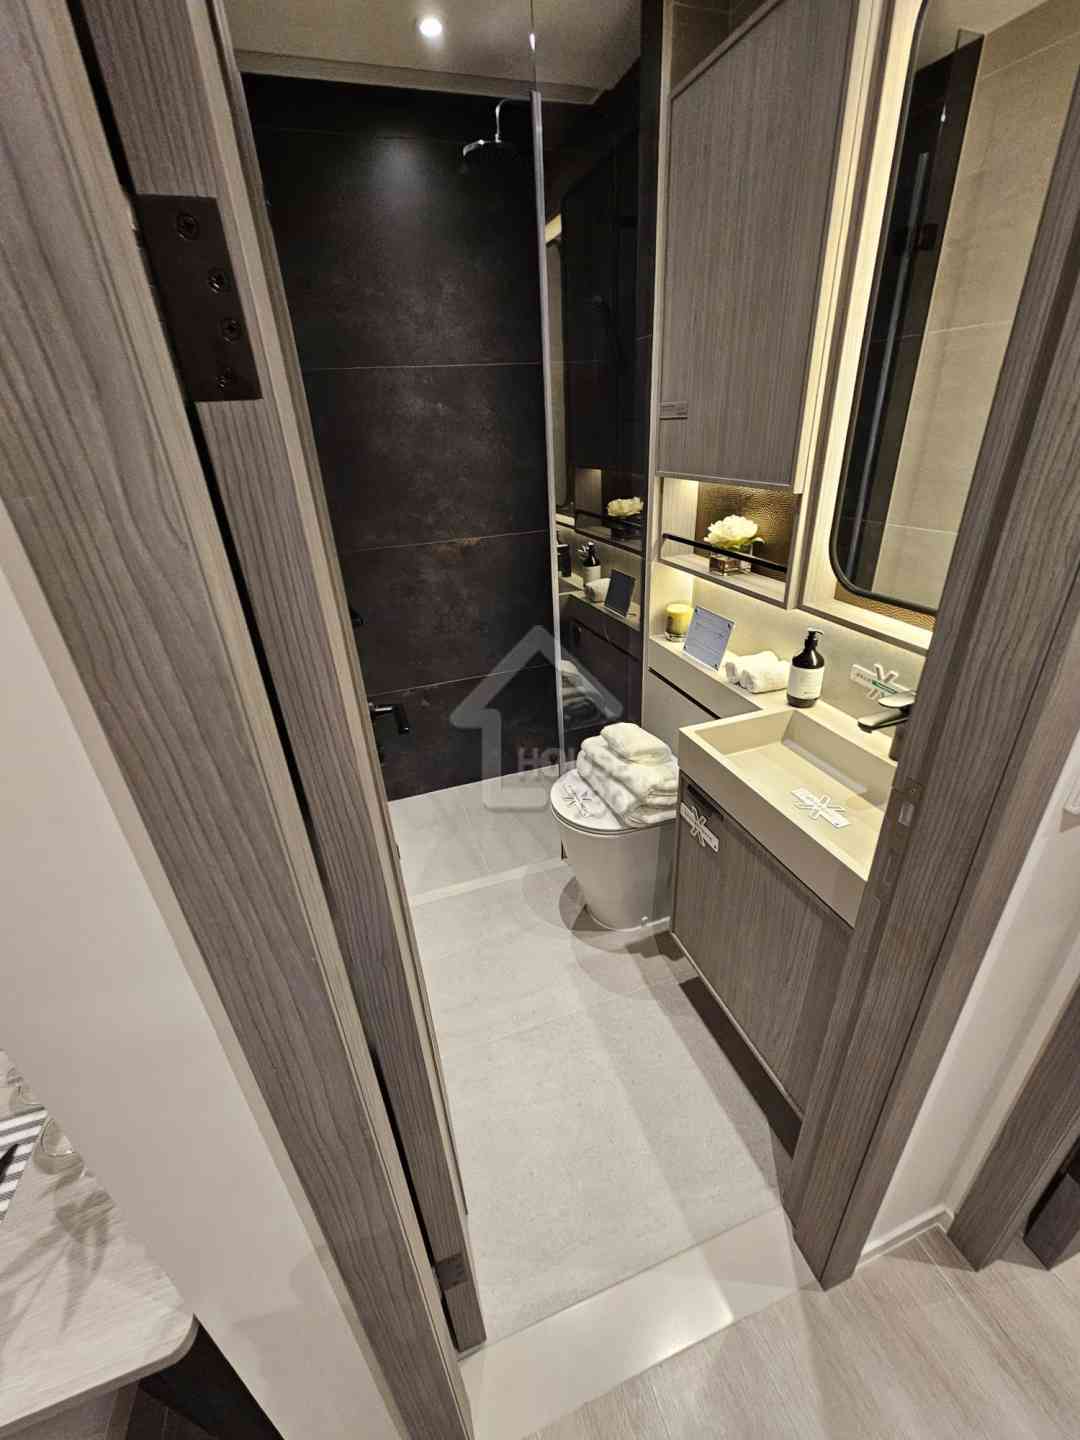 薈鳴經改動示範單位18樓A單位浴室。